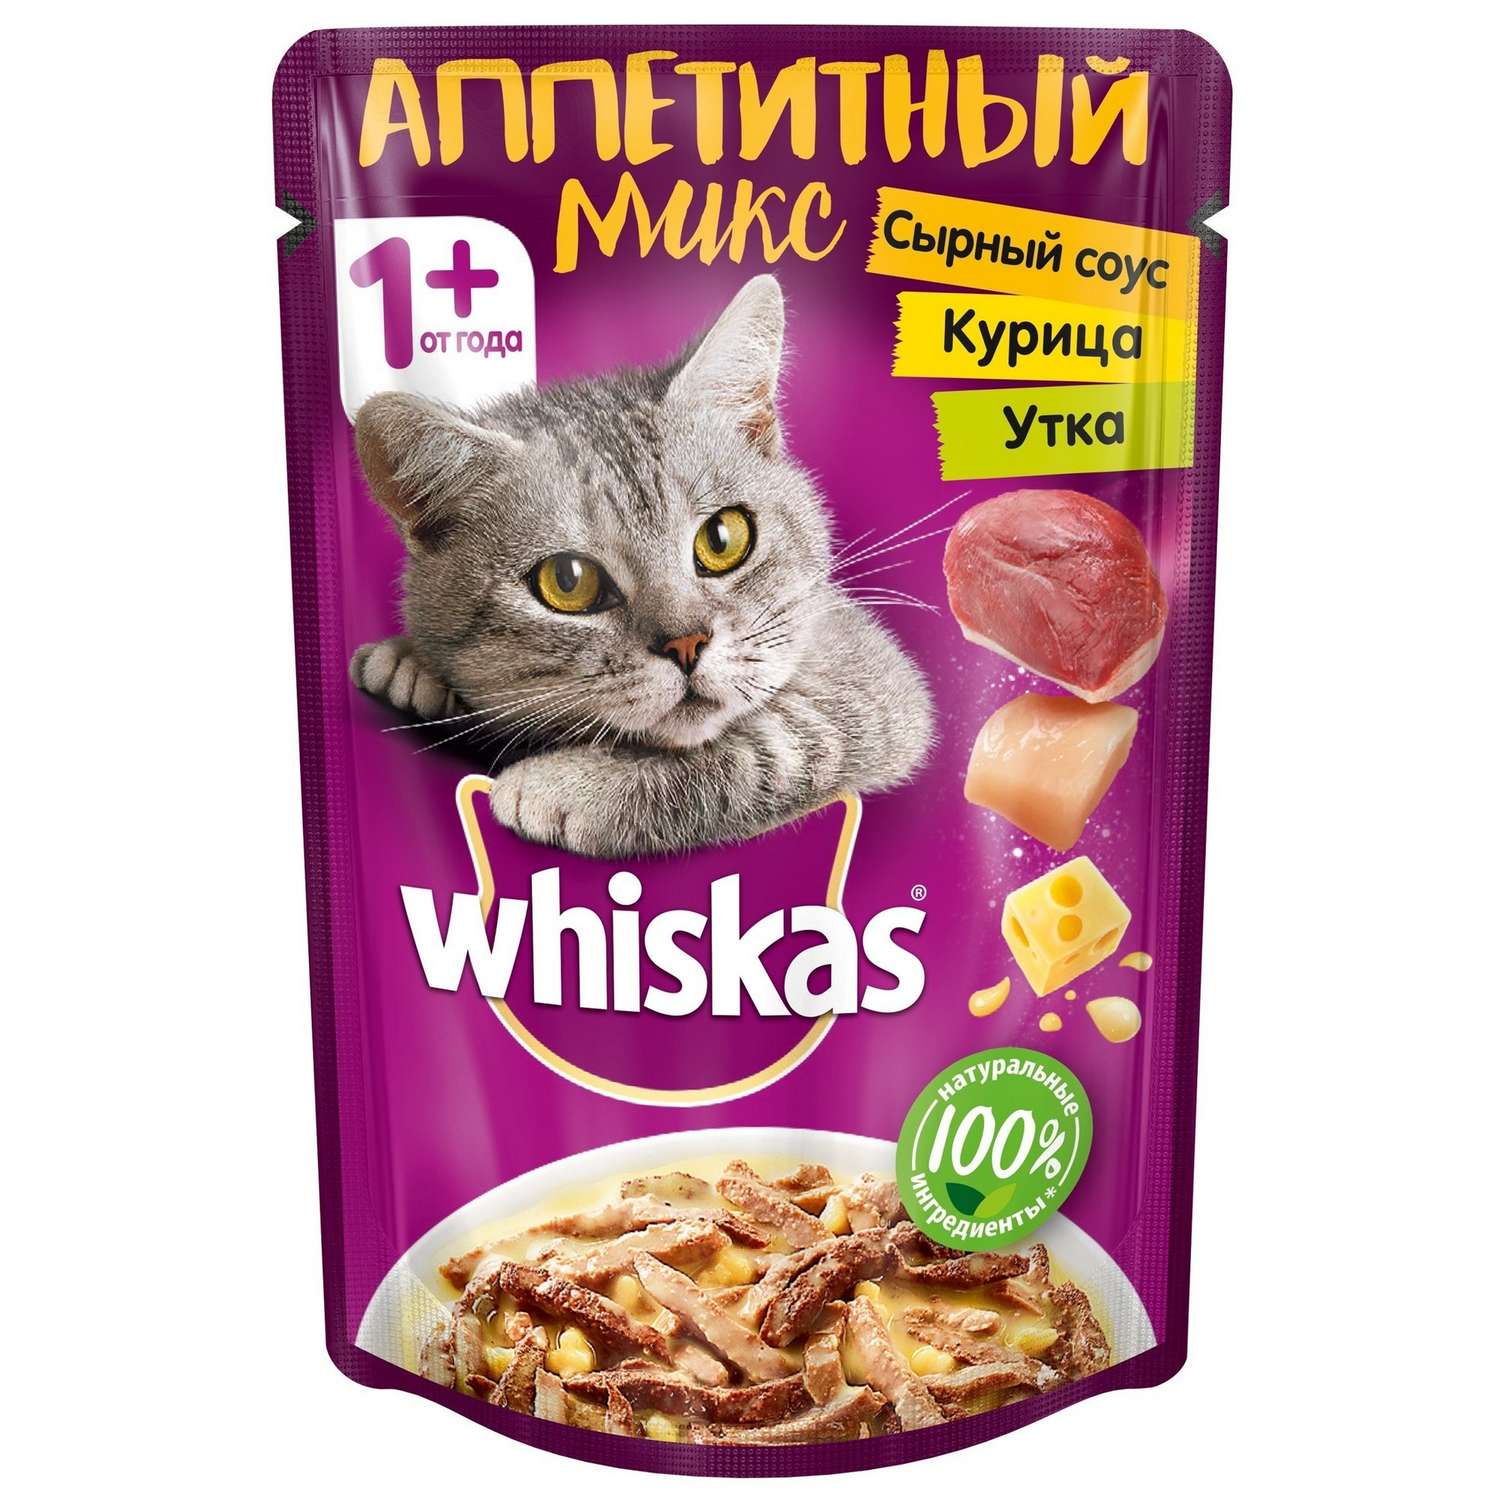 Корм влажный для кошек Whiskas 85г Аппетитный микс курица и утка в сырном соусе пауч - фото 1